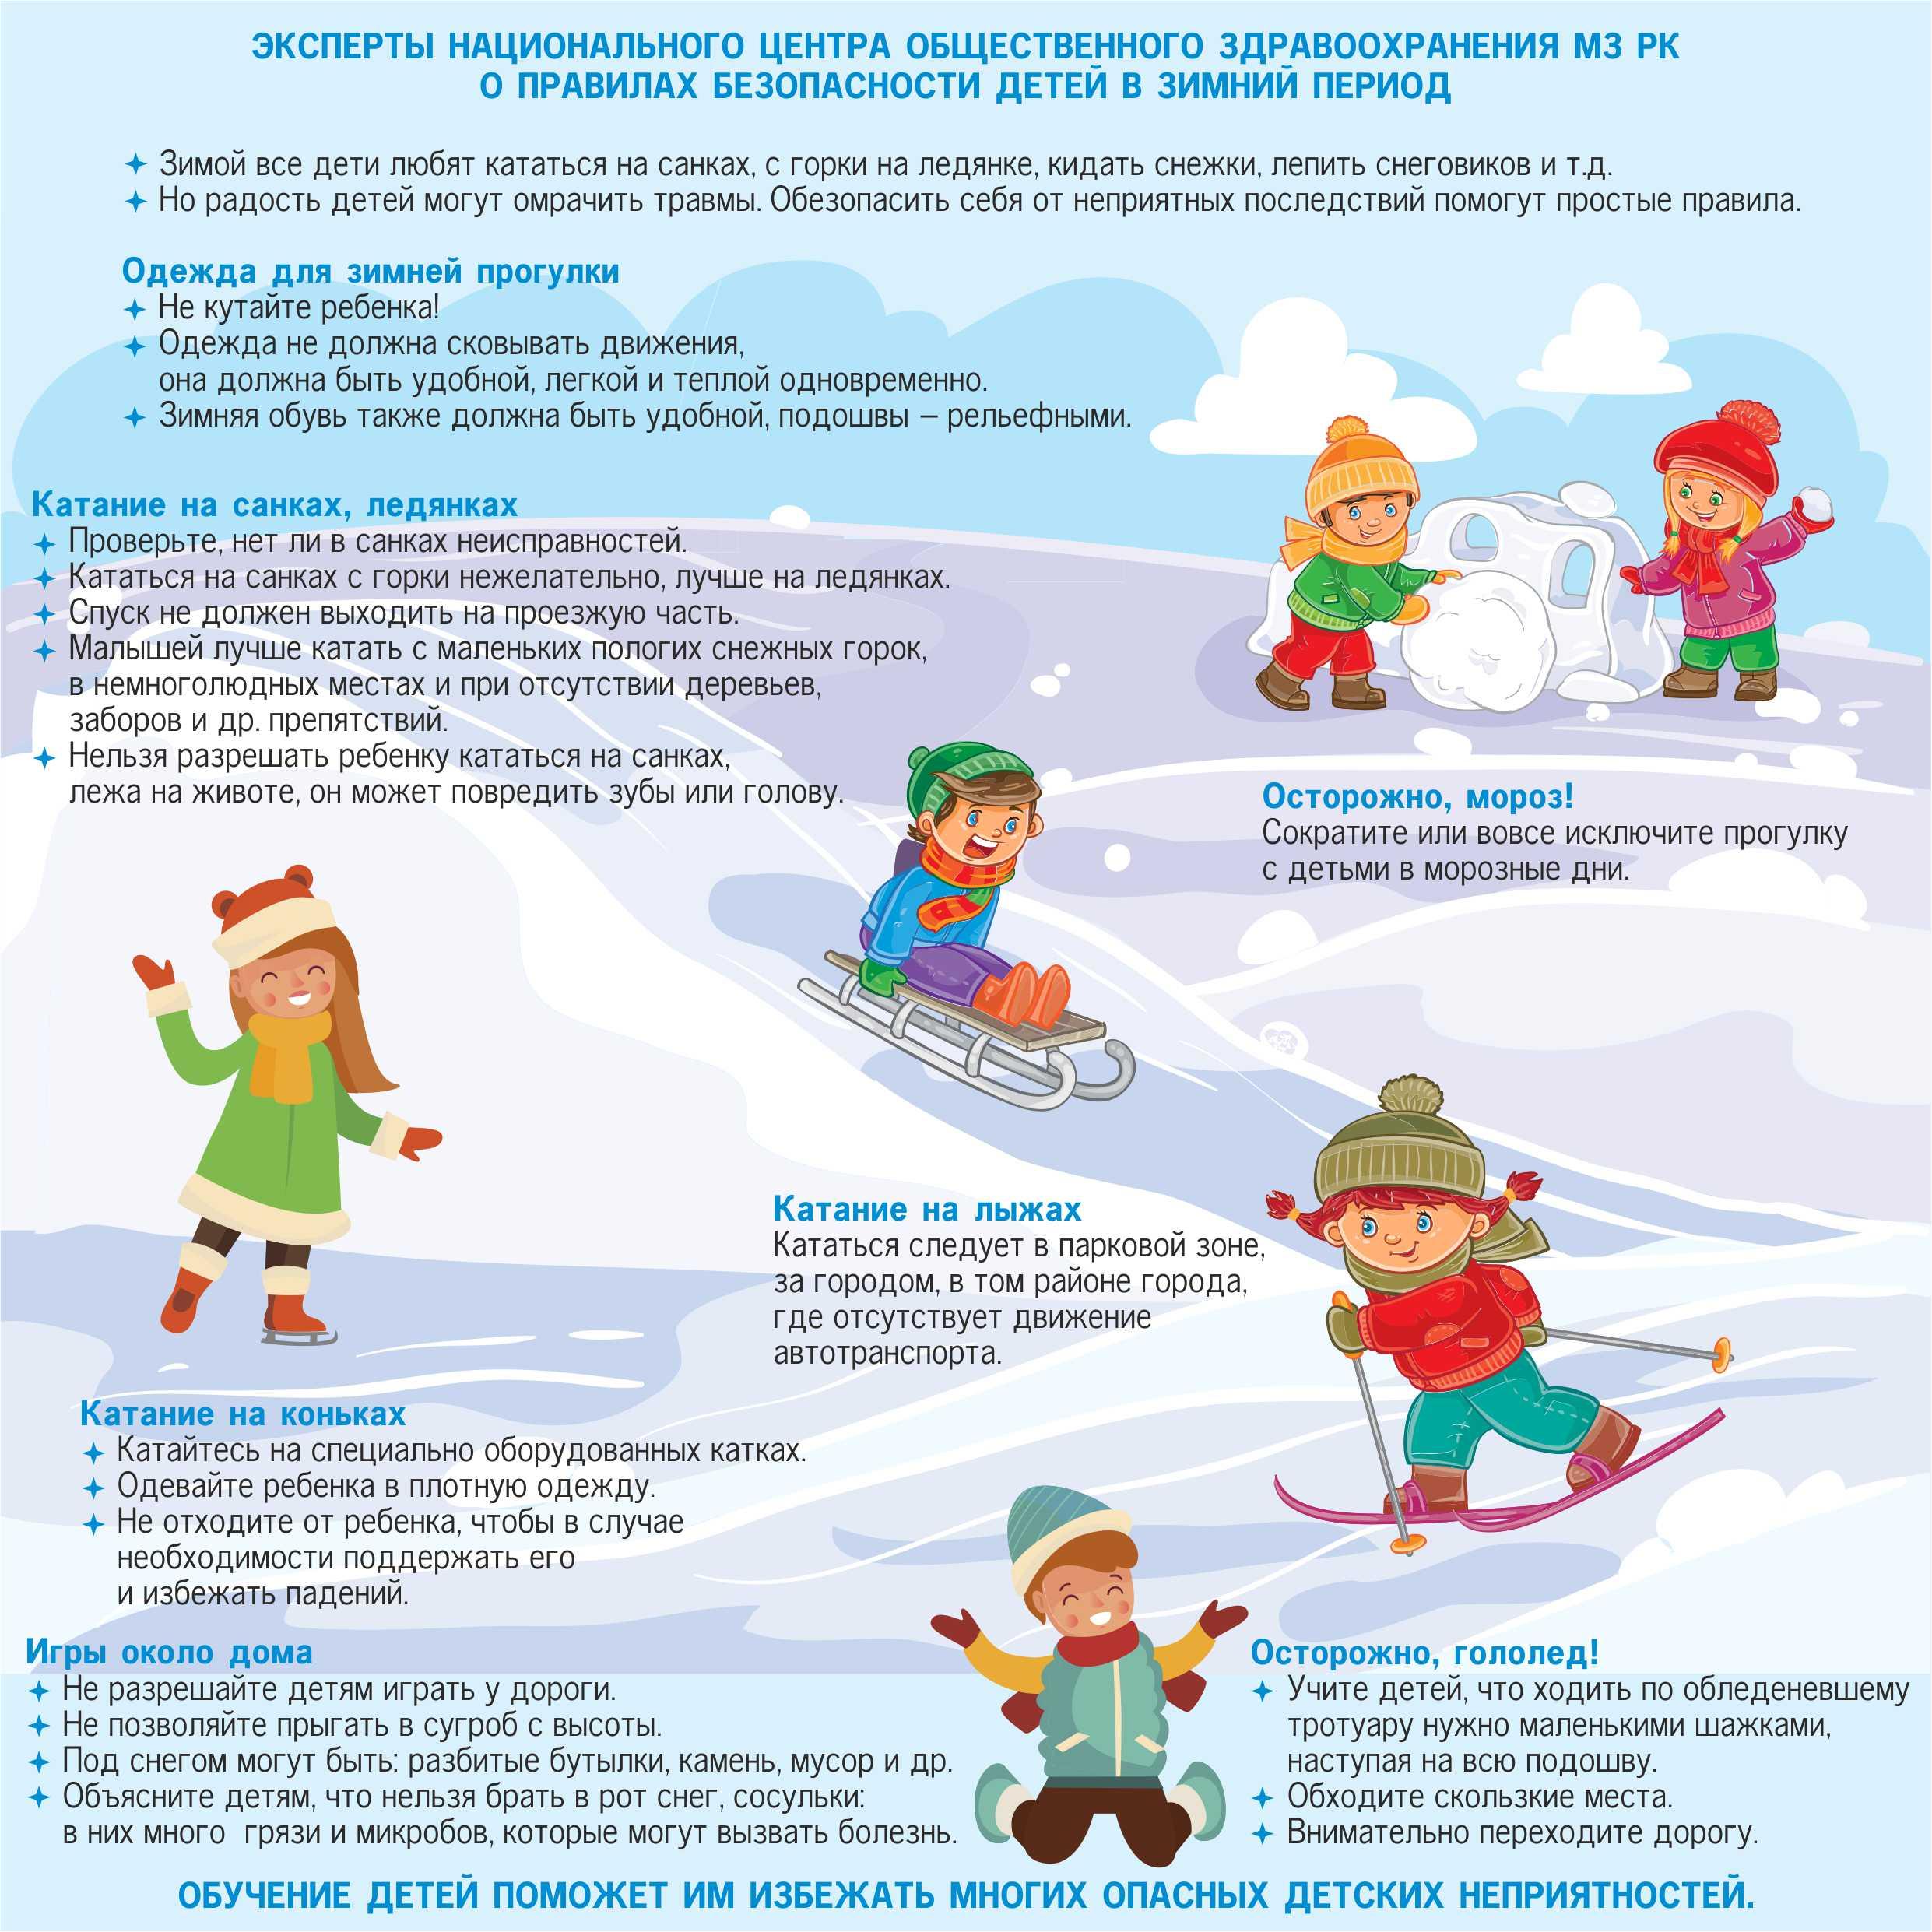 В какие детские игры поиграть зимой? — Инфокам